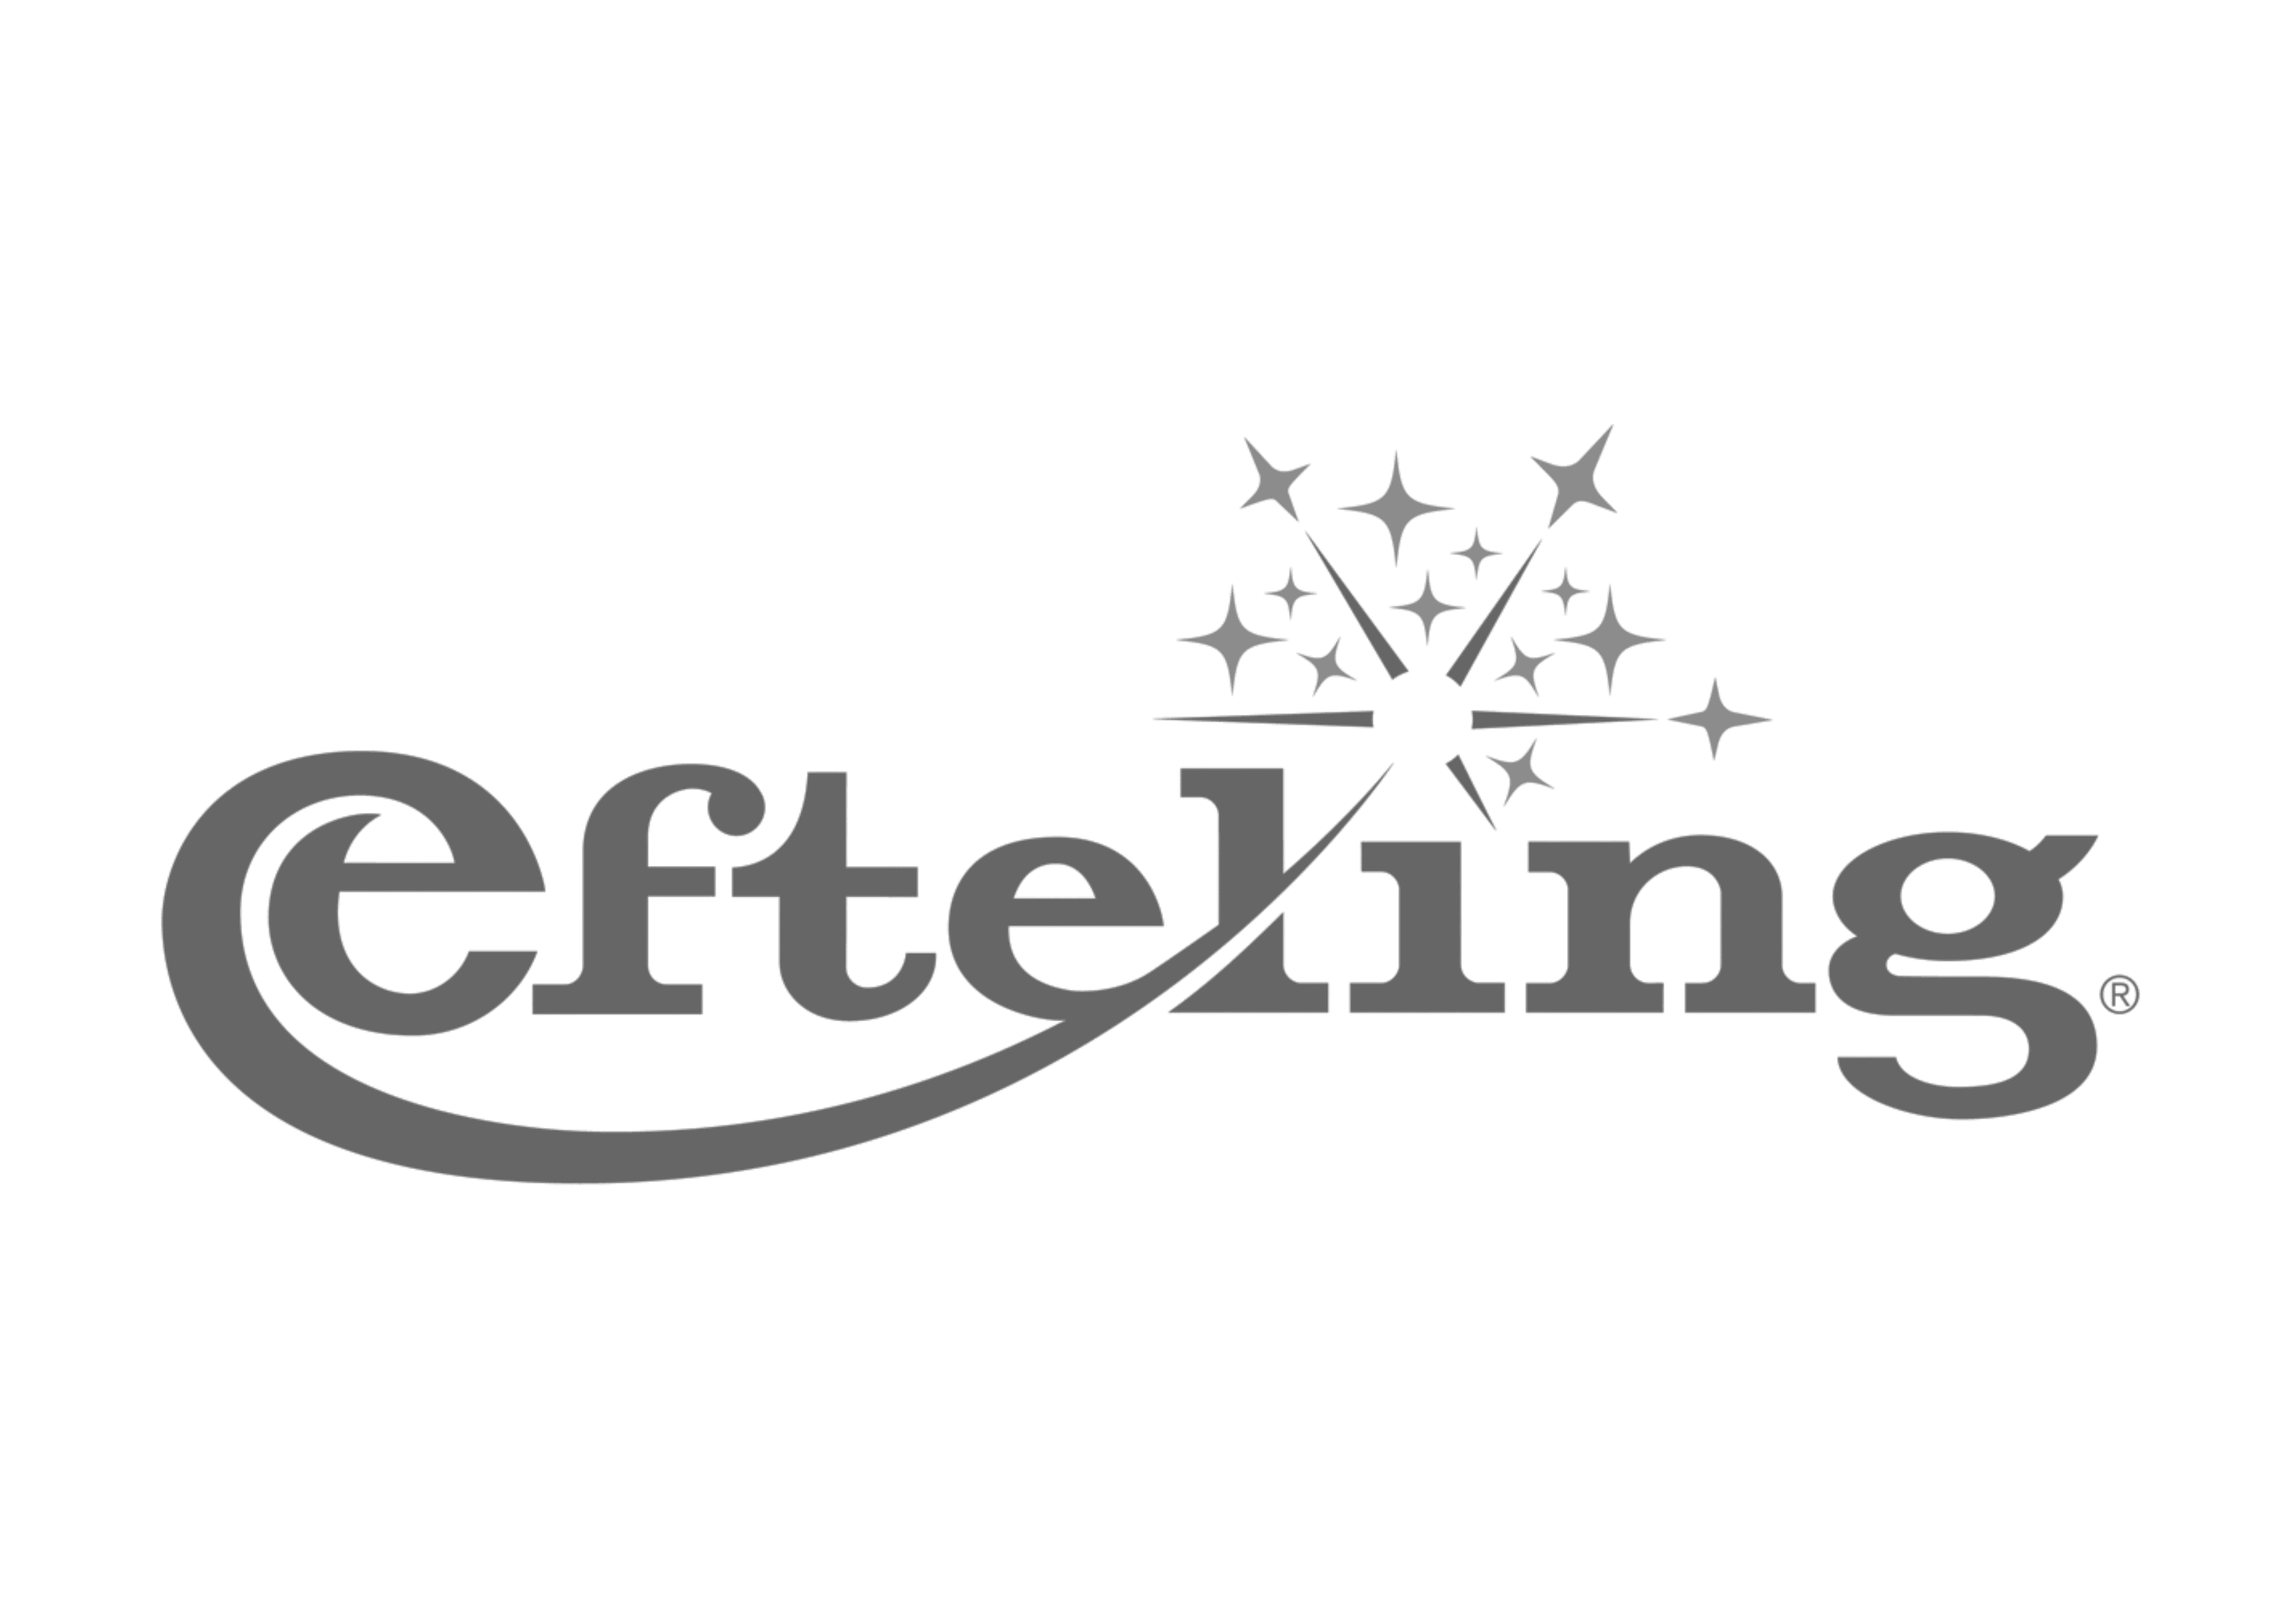 Efteling-1.png